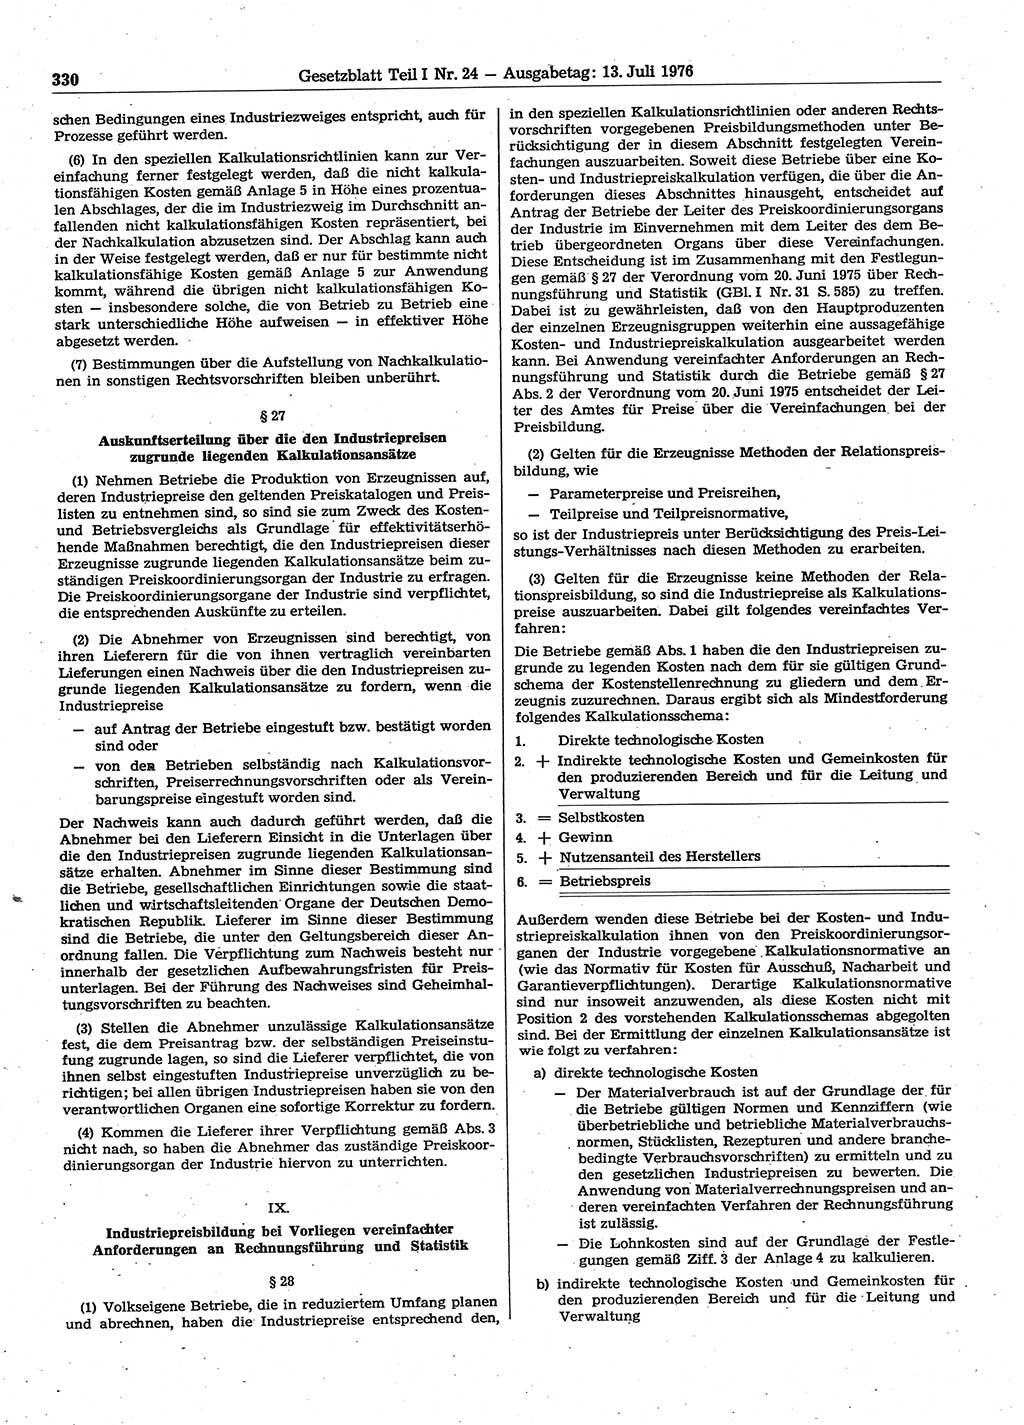 Gesetzblatt (GBl.) der Deutschen Demokratischen Republik (DDR) Teil Ⅰ 1976, Seite 330 (GBl. DDR Ⅰ 1976, S. 330)